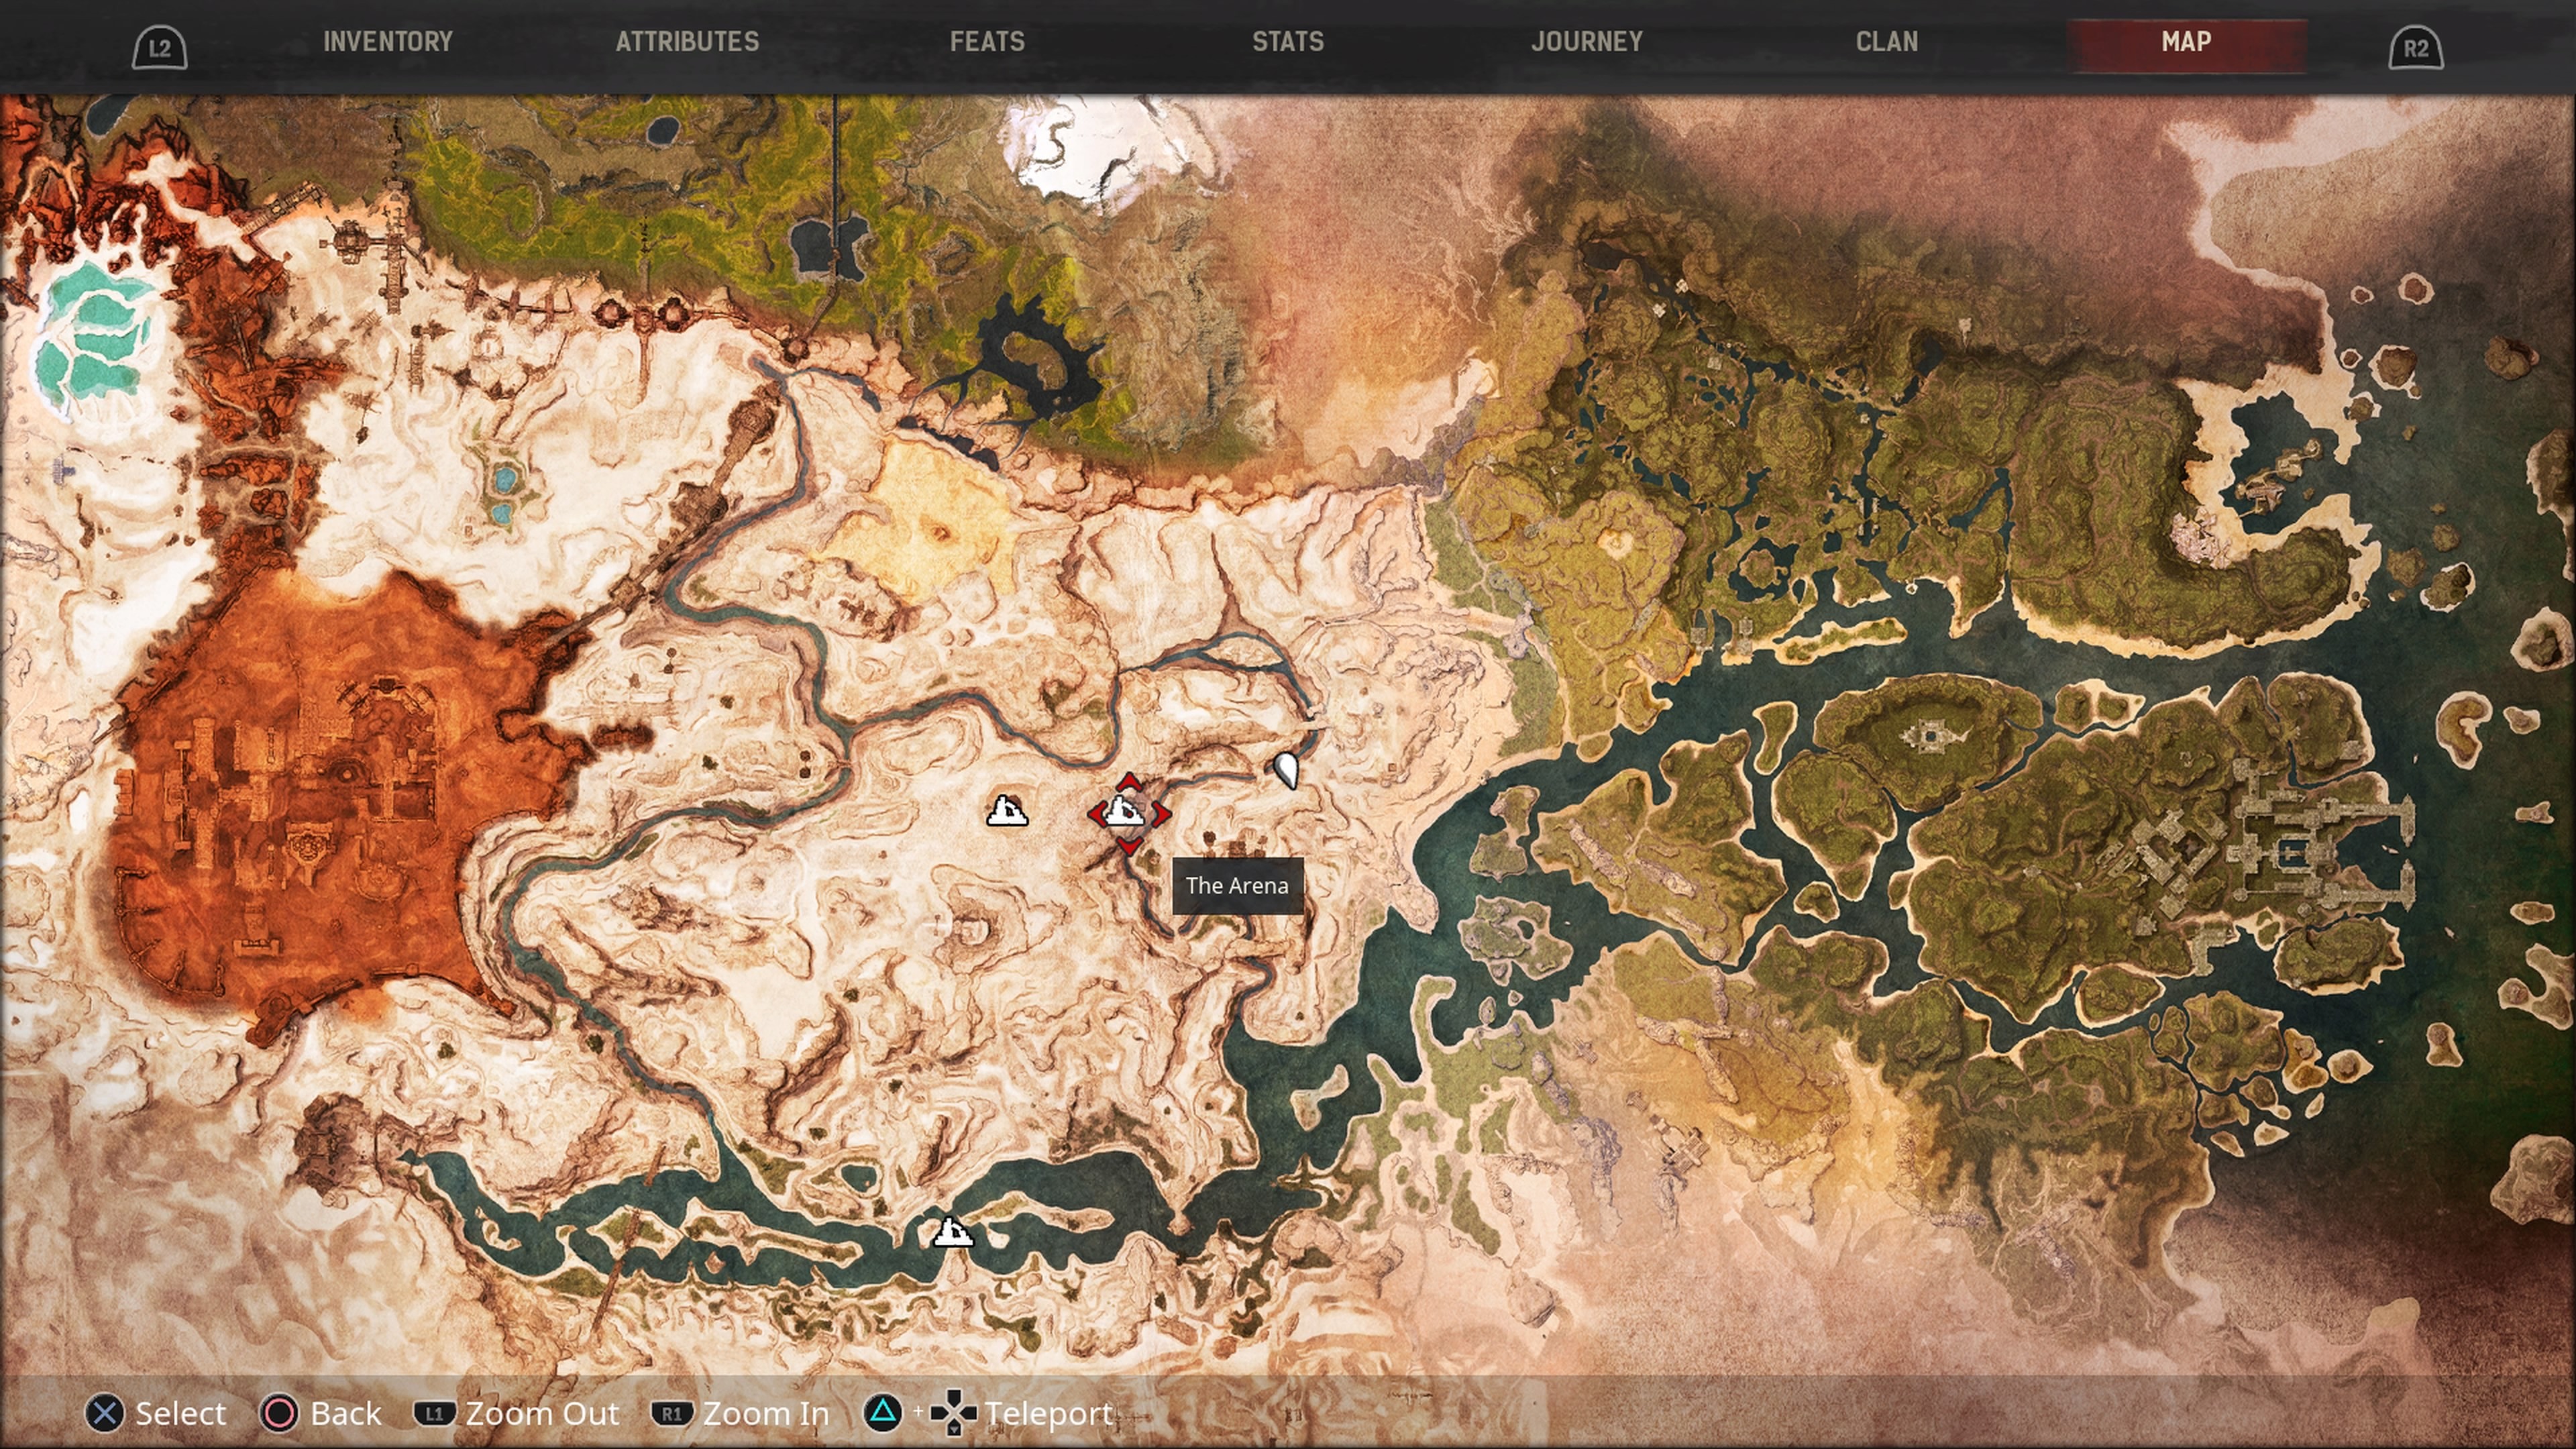 conan exiles interactive map with coordinates